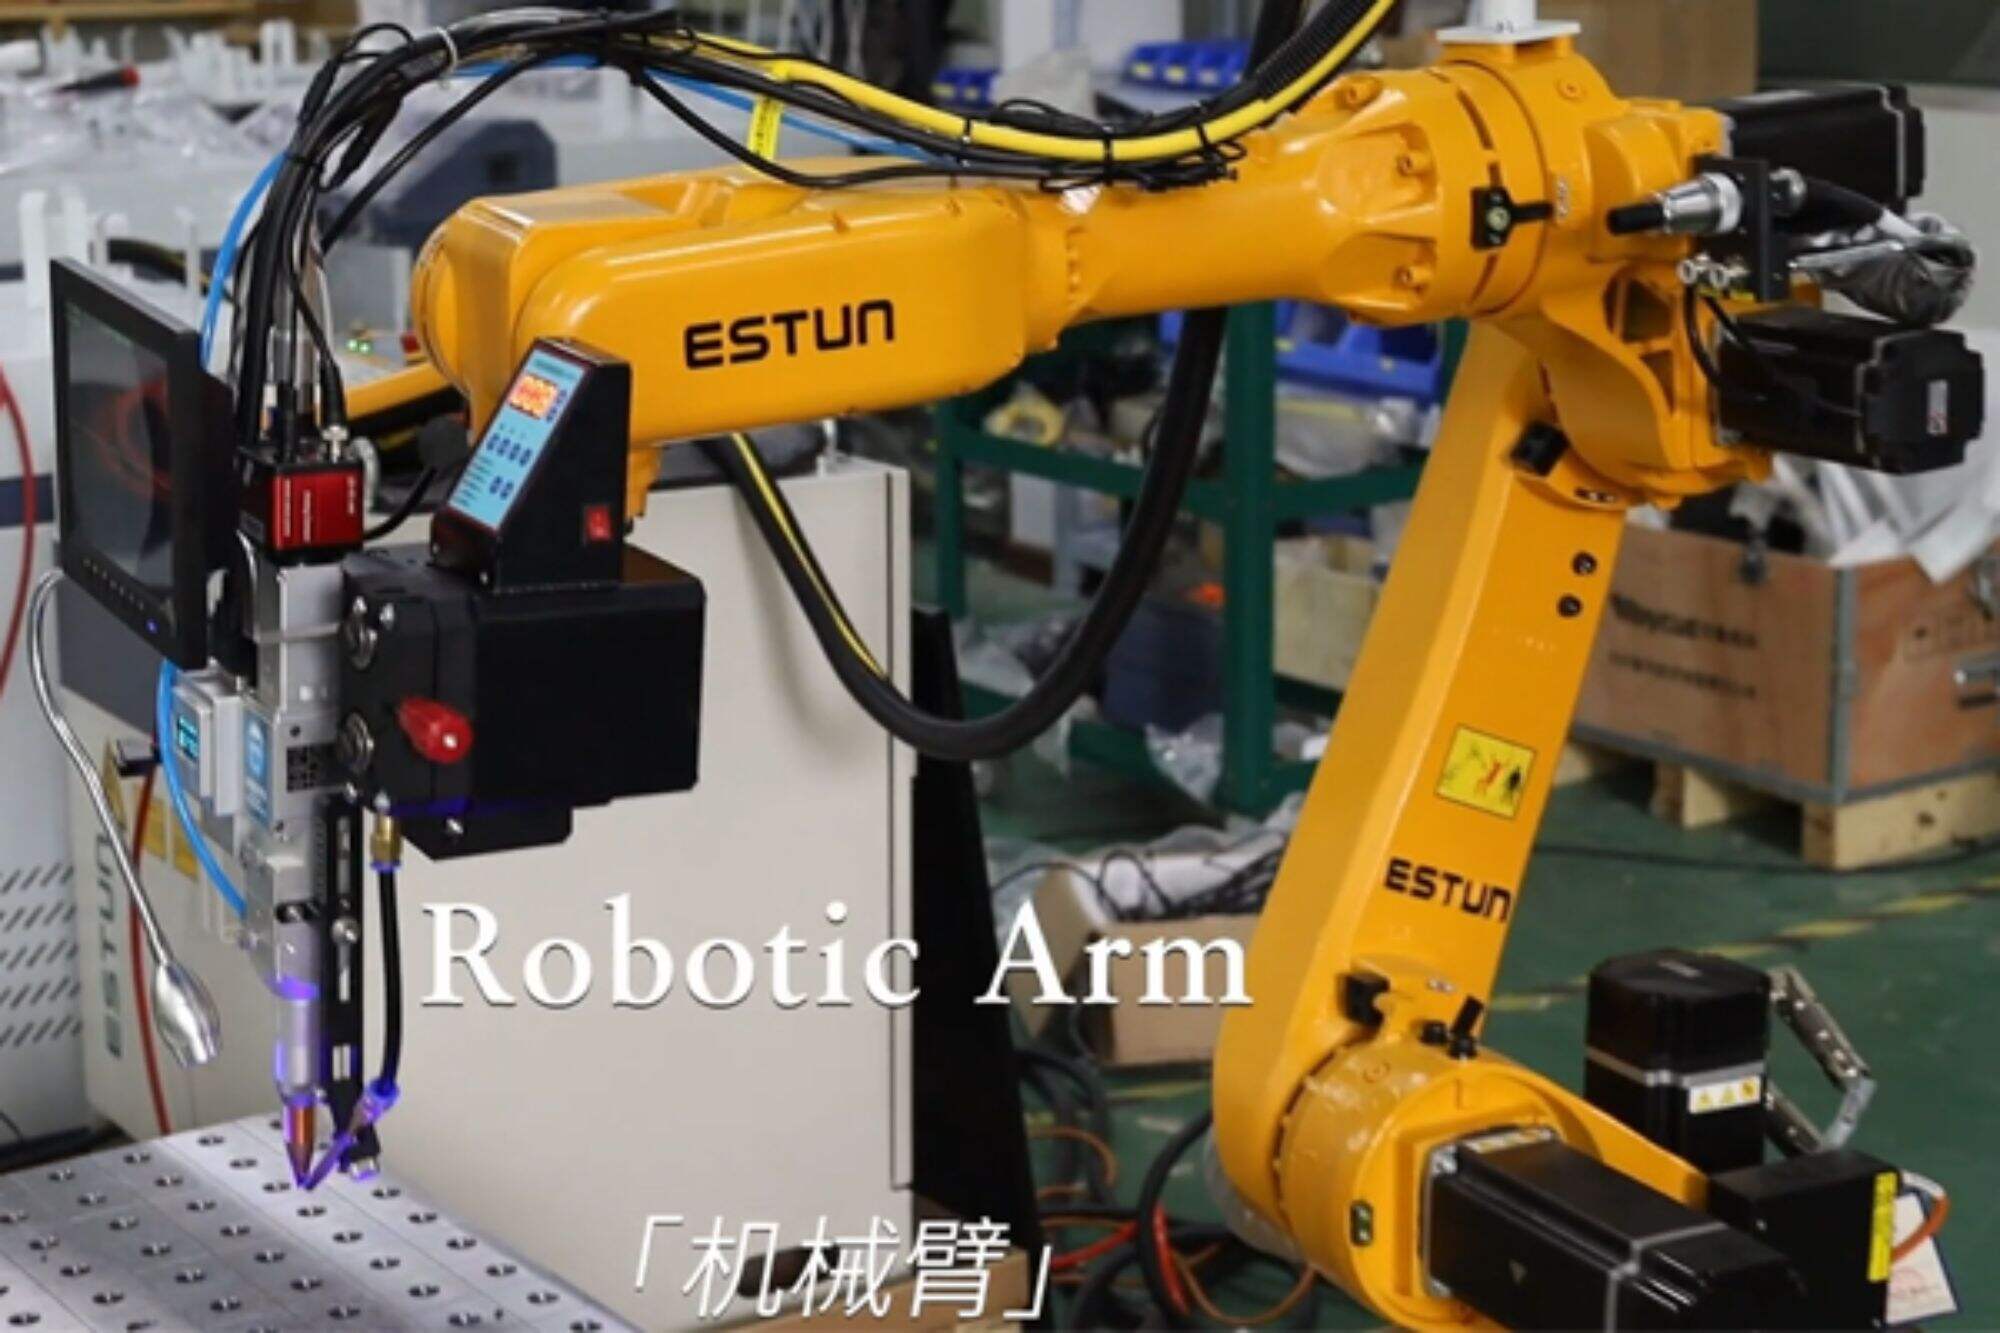 Robot lazer kaynak ekipmanının kurulum eğitimi